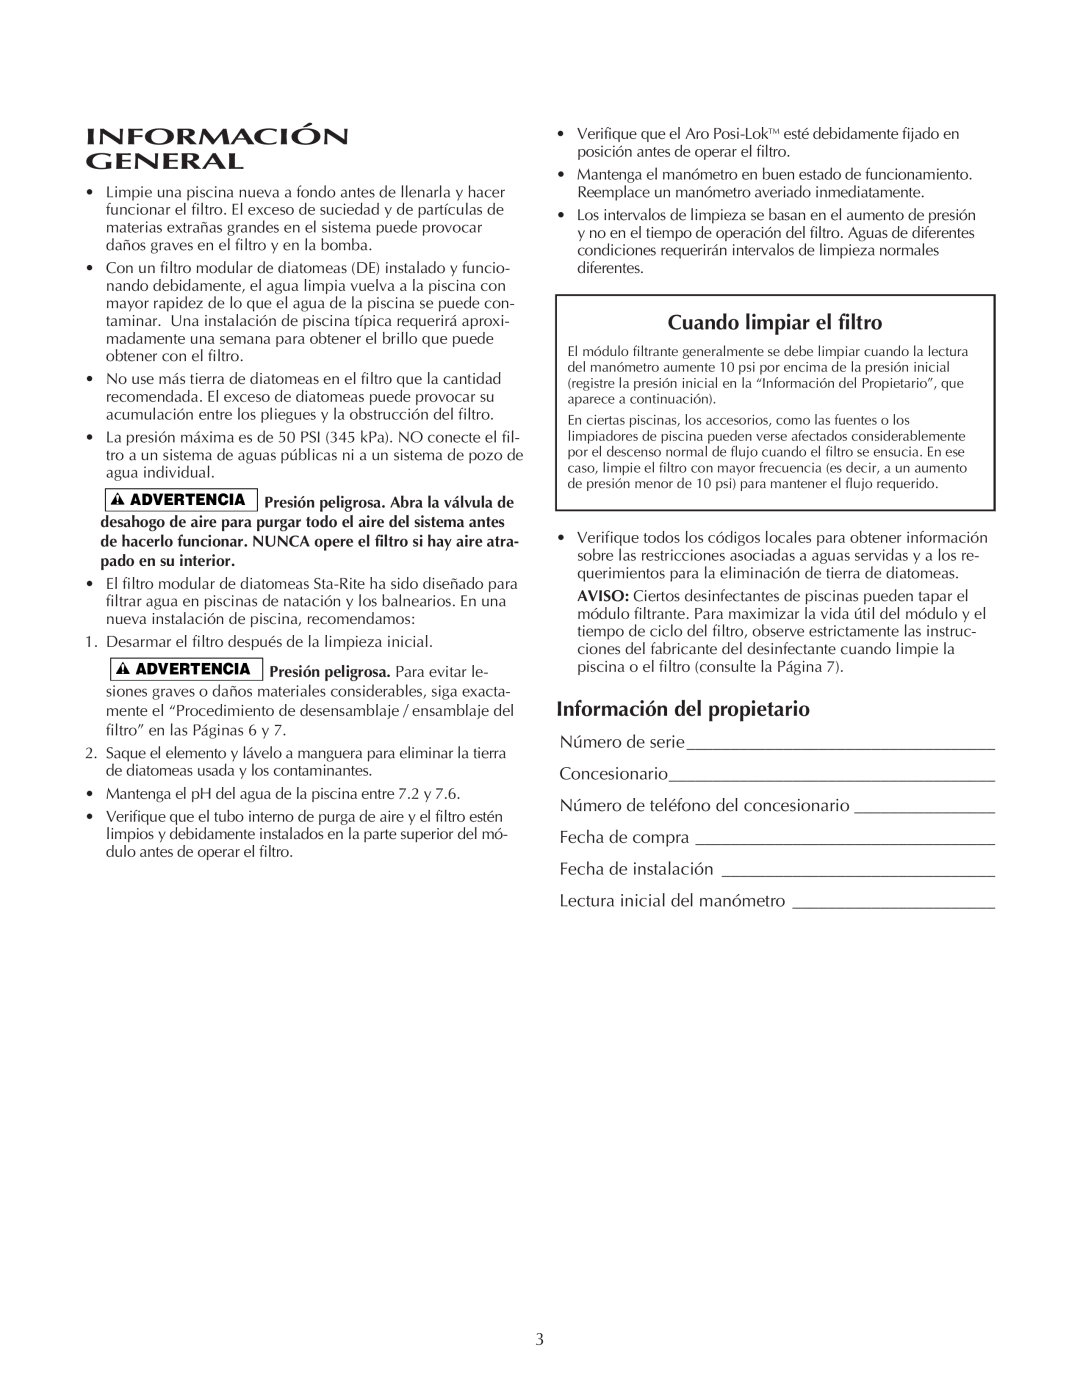 Pentair PLDE48, PLDE36 owner manual Información General, Cuando limpiar el filtro, Información del propietario 